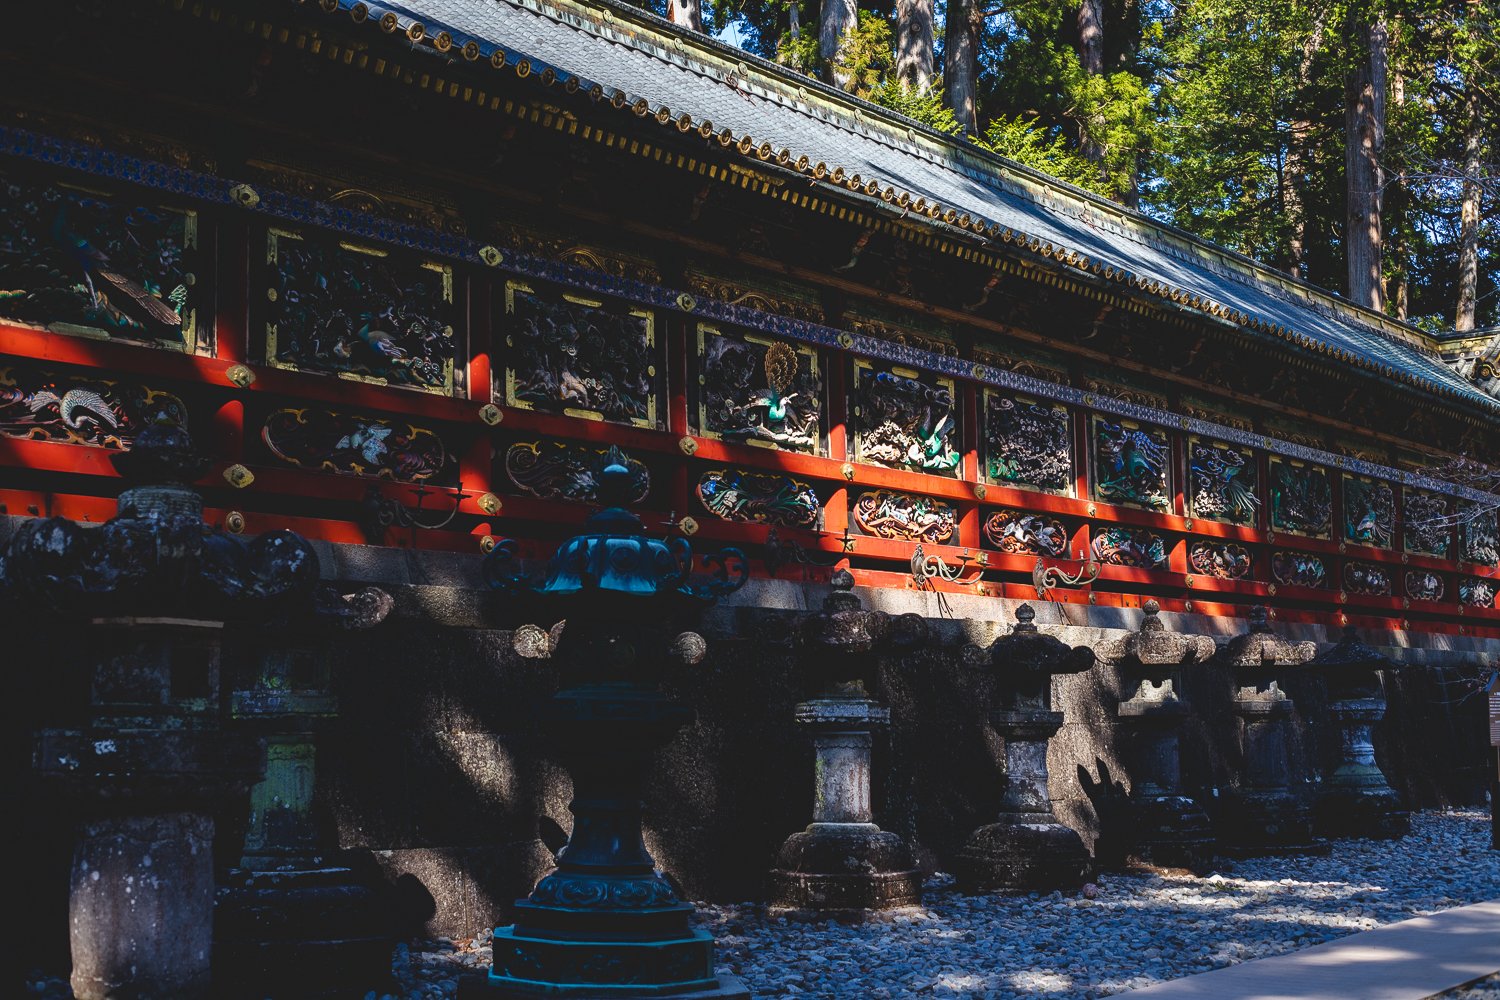 Le mur d'un batiment du sanctuaire de Nikko. Le tout est couvert de bois sculpté et peint formant des bas reliefs de couleurs vives. Devant le mur se trouve une rangée de lanternes de pierre.